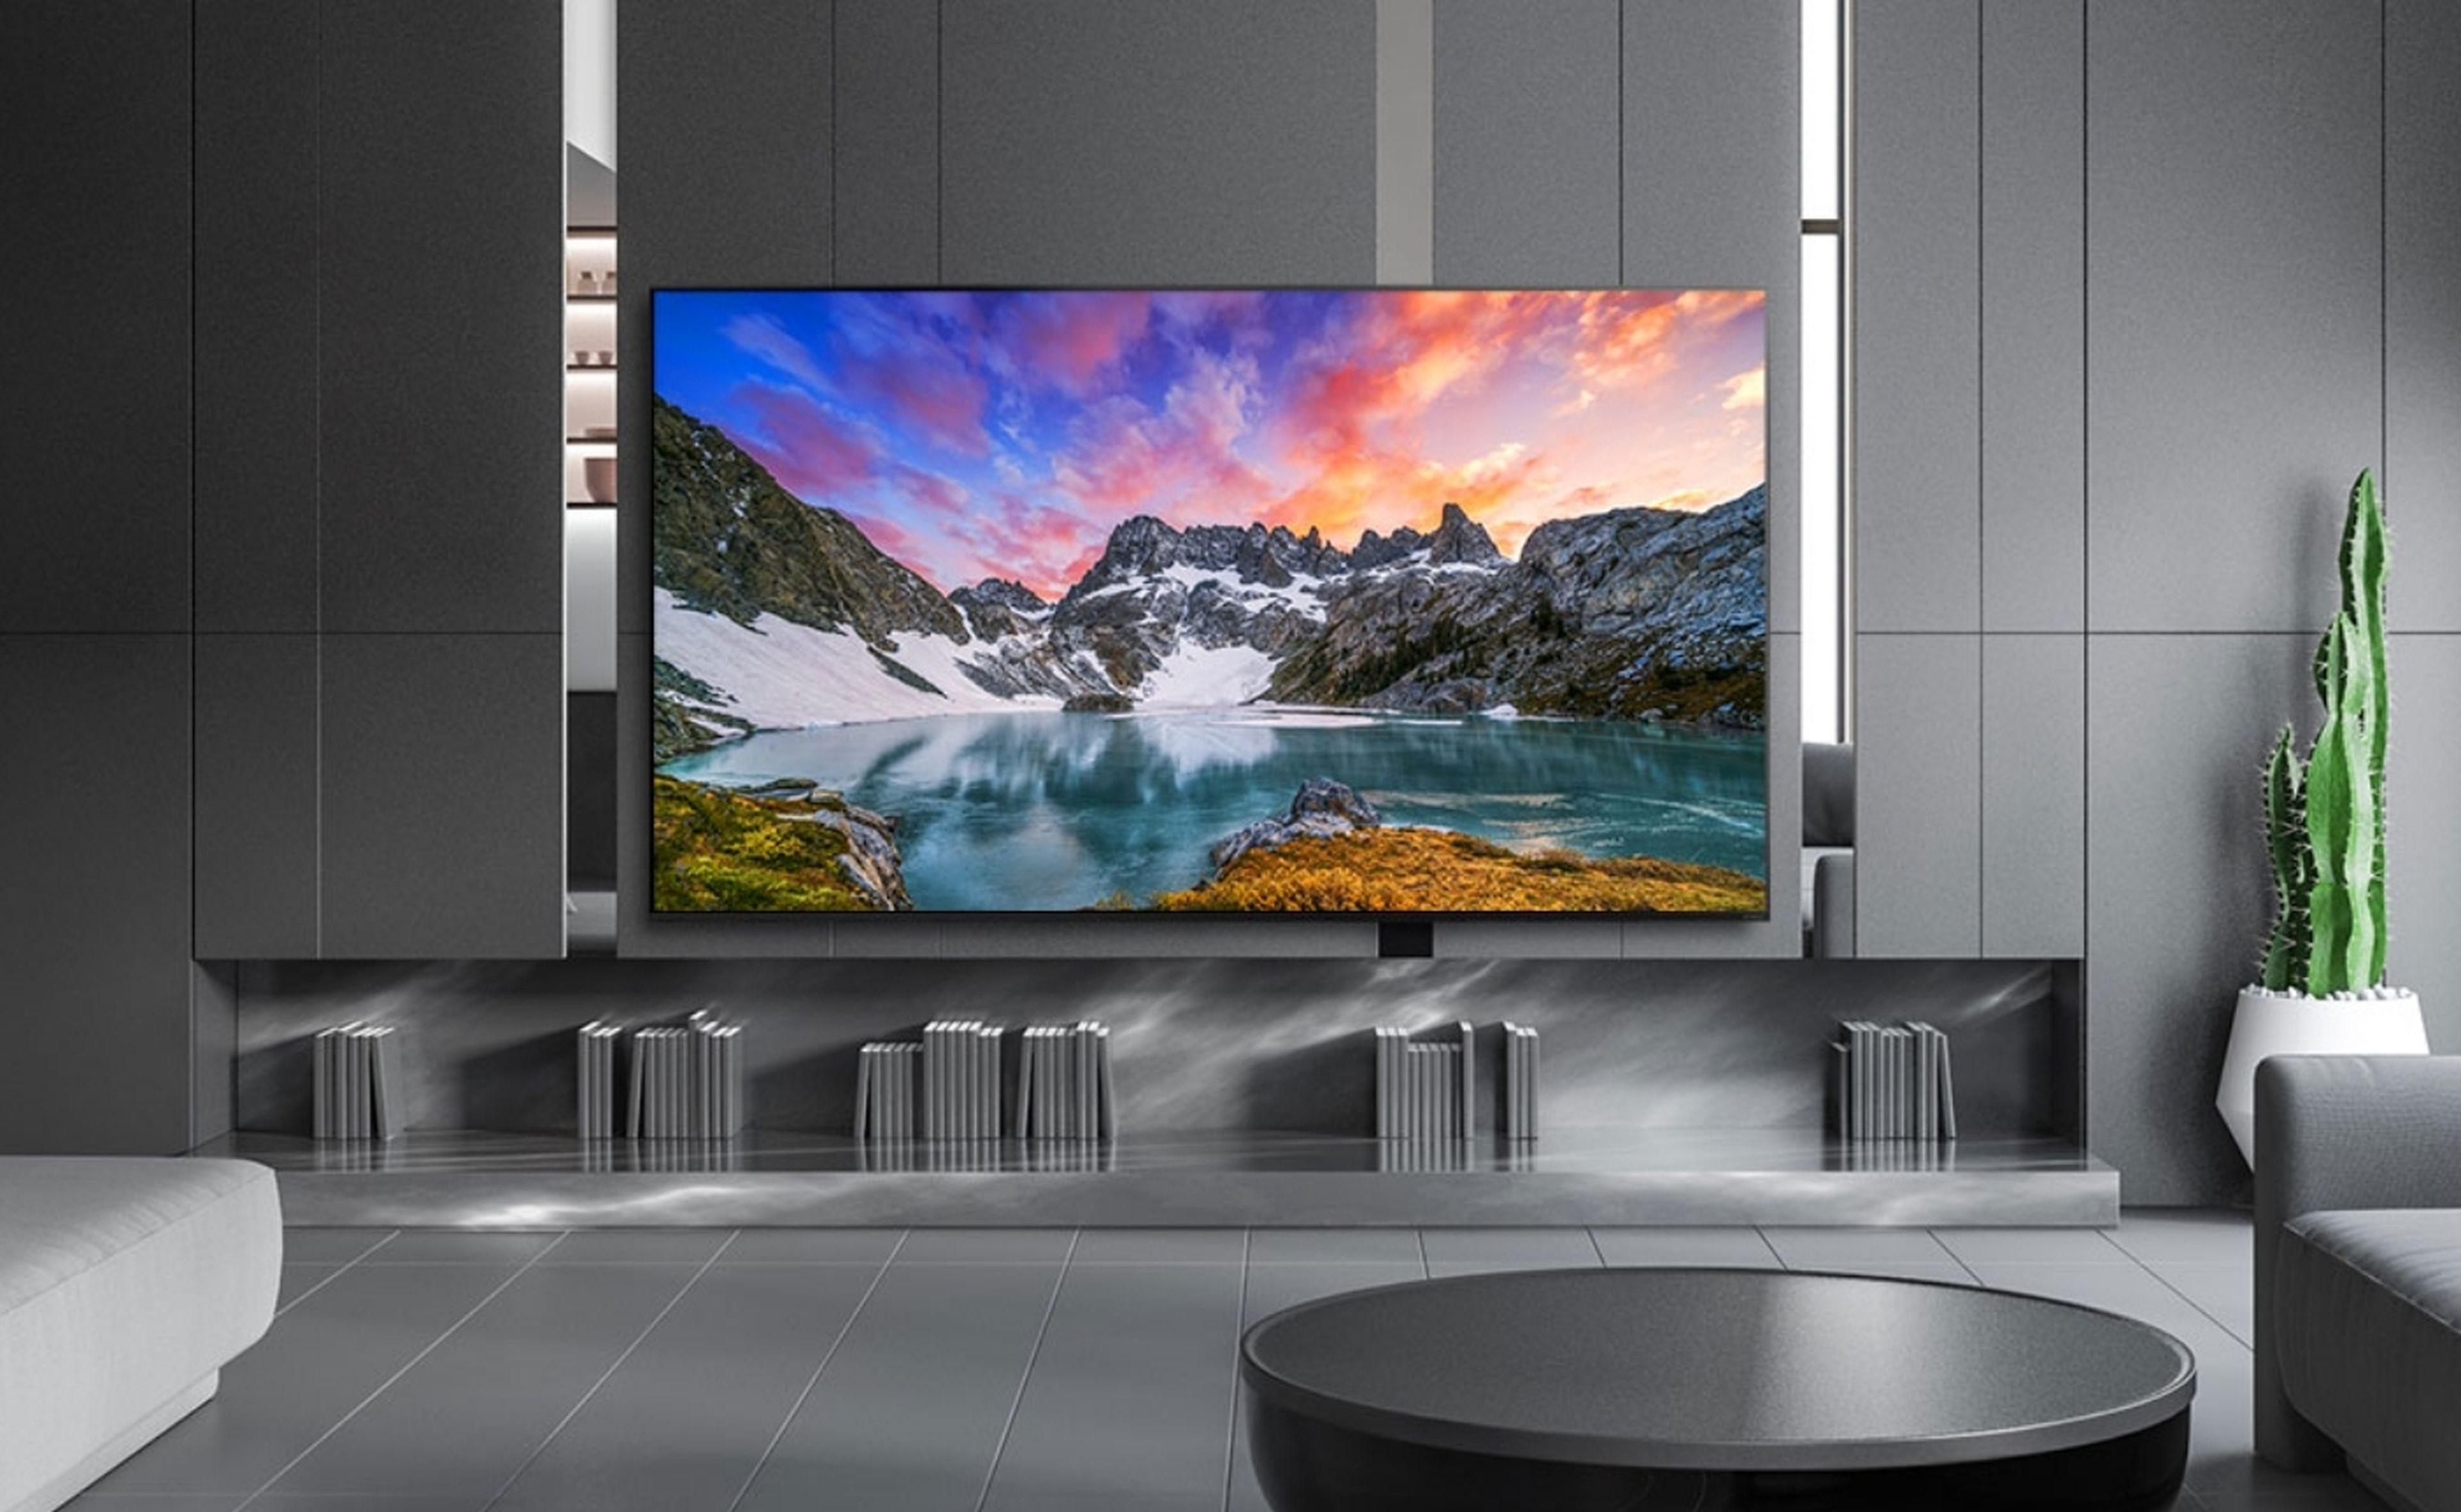 Este televisor LG Nanocell de 55 pulgadas con resolución 4K y HDR baja de  precio, y es ideal para ver series y películas